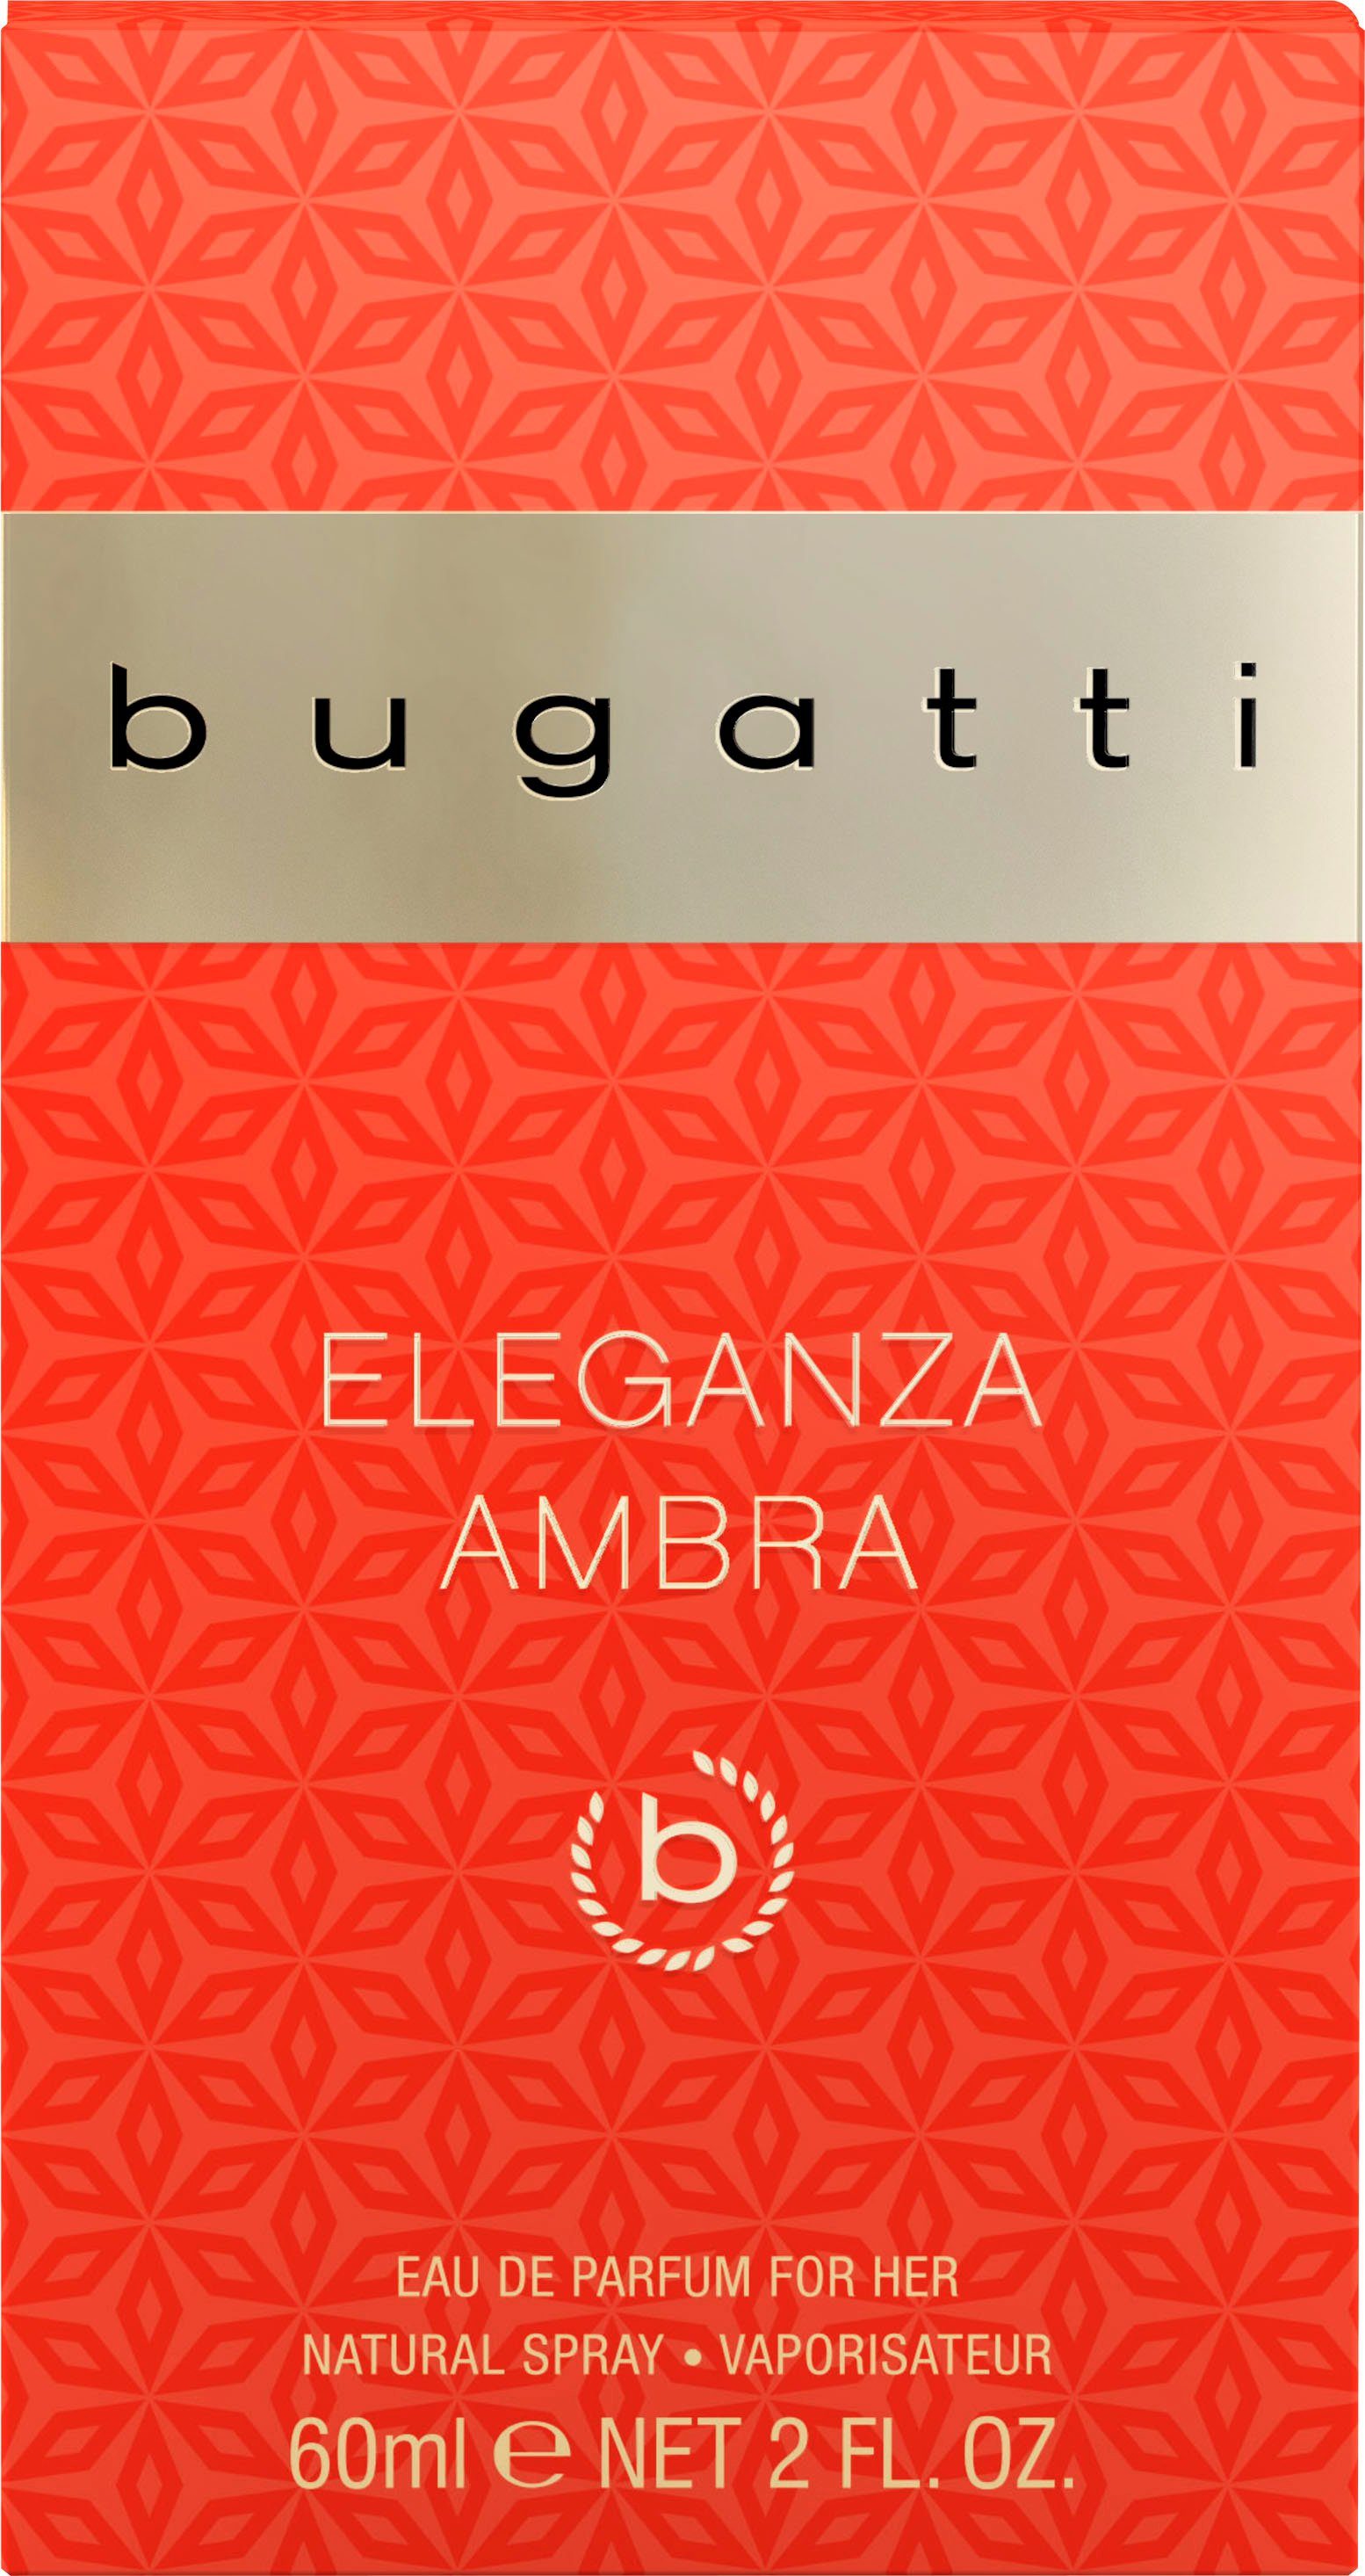 Ambra BUGATTI Eau EdP de Eleganza Parfum 60 bugatti ml for her